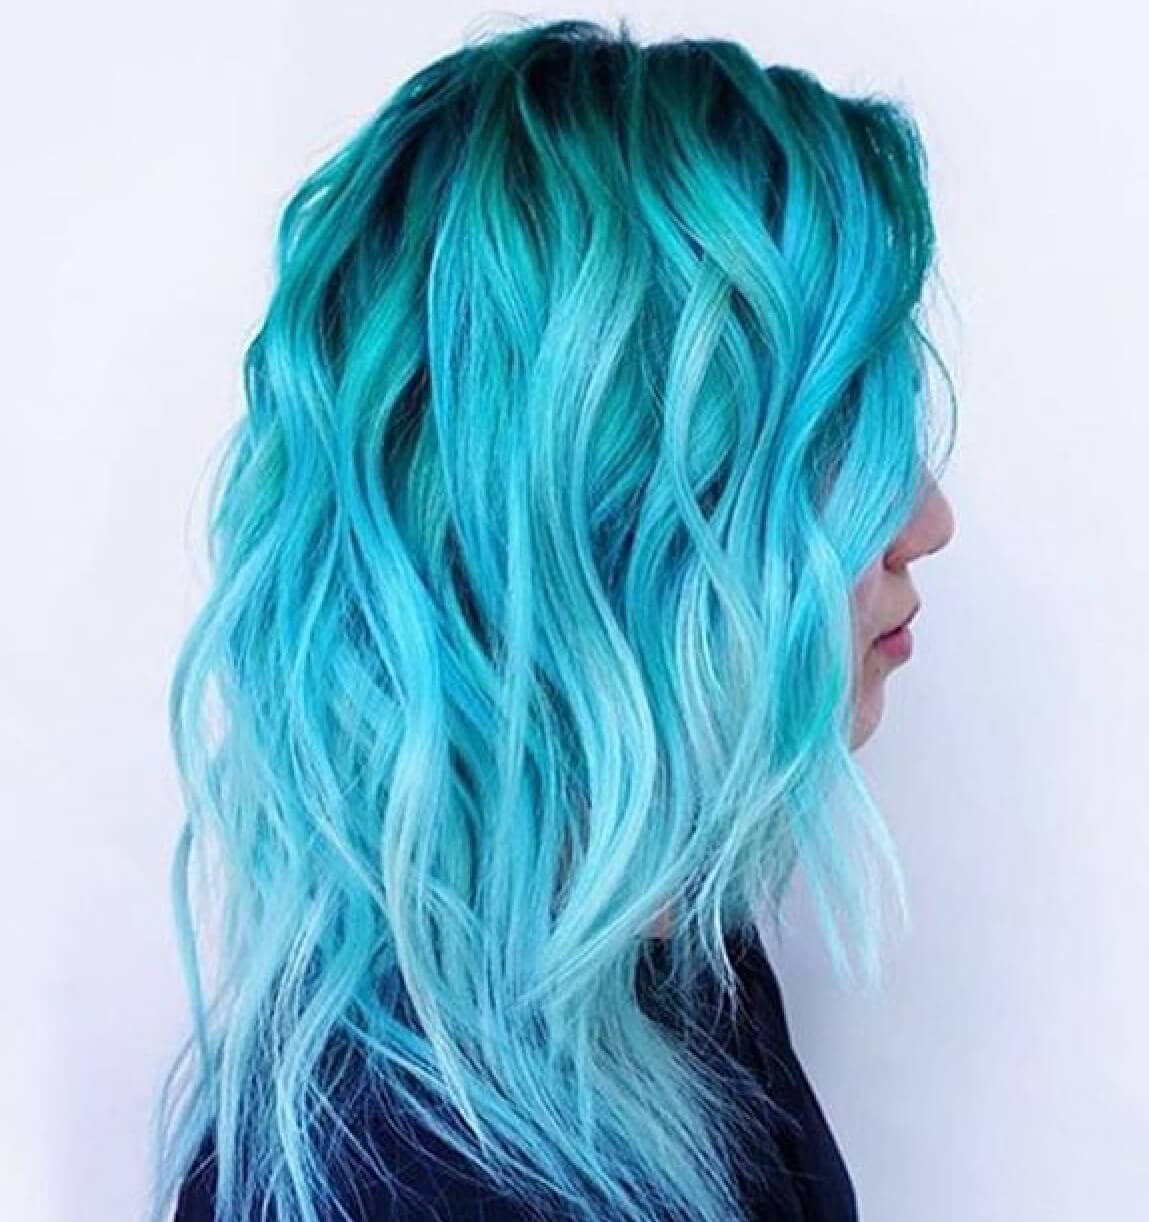 50 Fun Blue Hair Ideas to More Adventurous in 2020